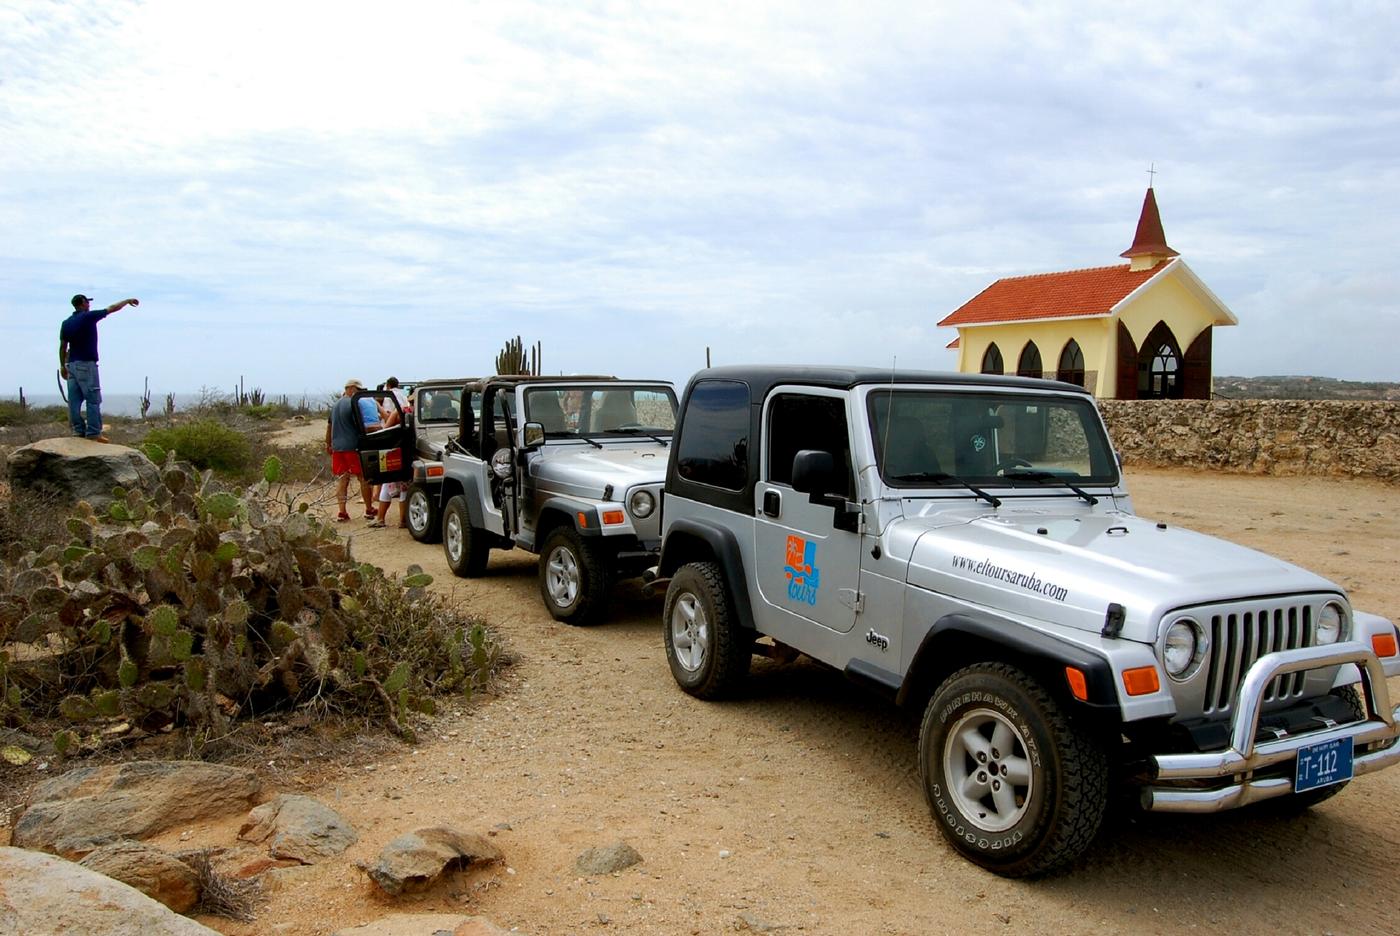 Best jeep tours in aruba #1